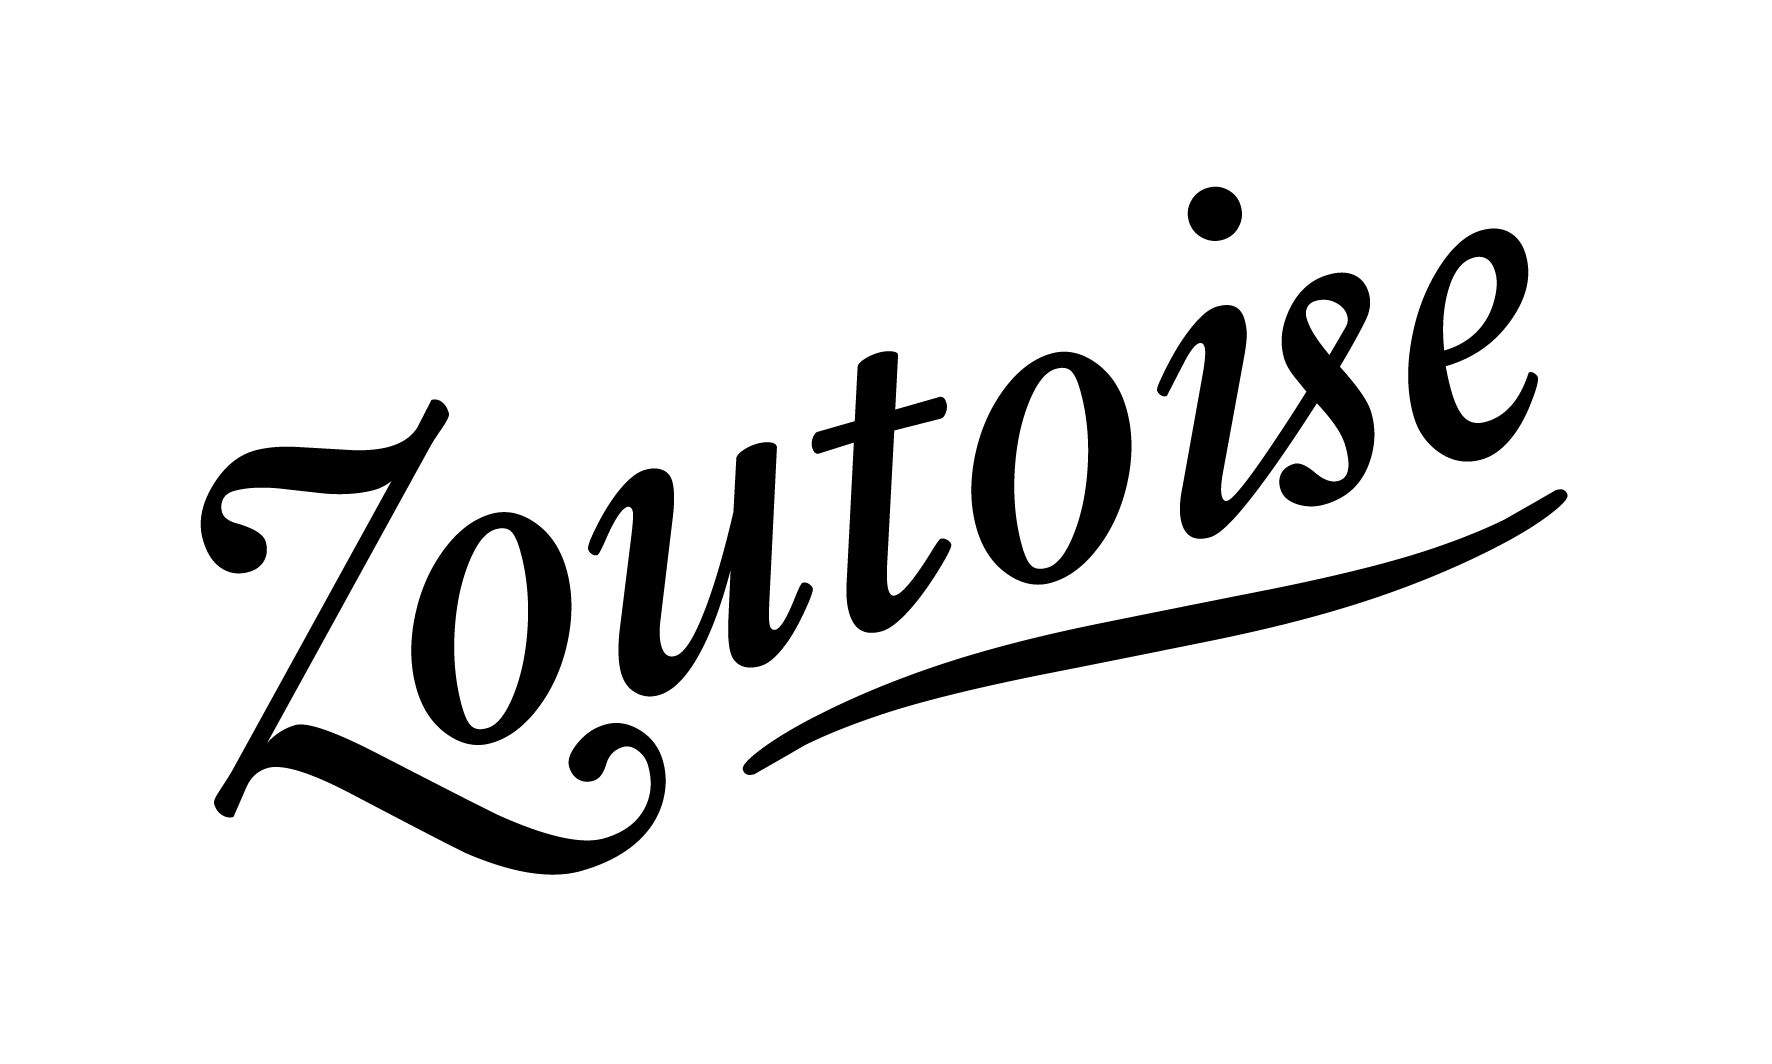 Zoutoise Logo 04